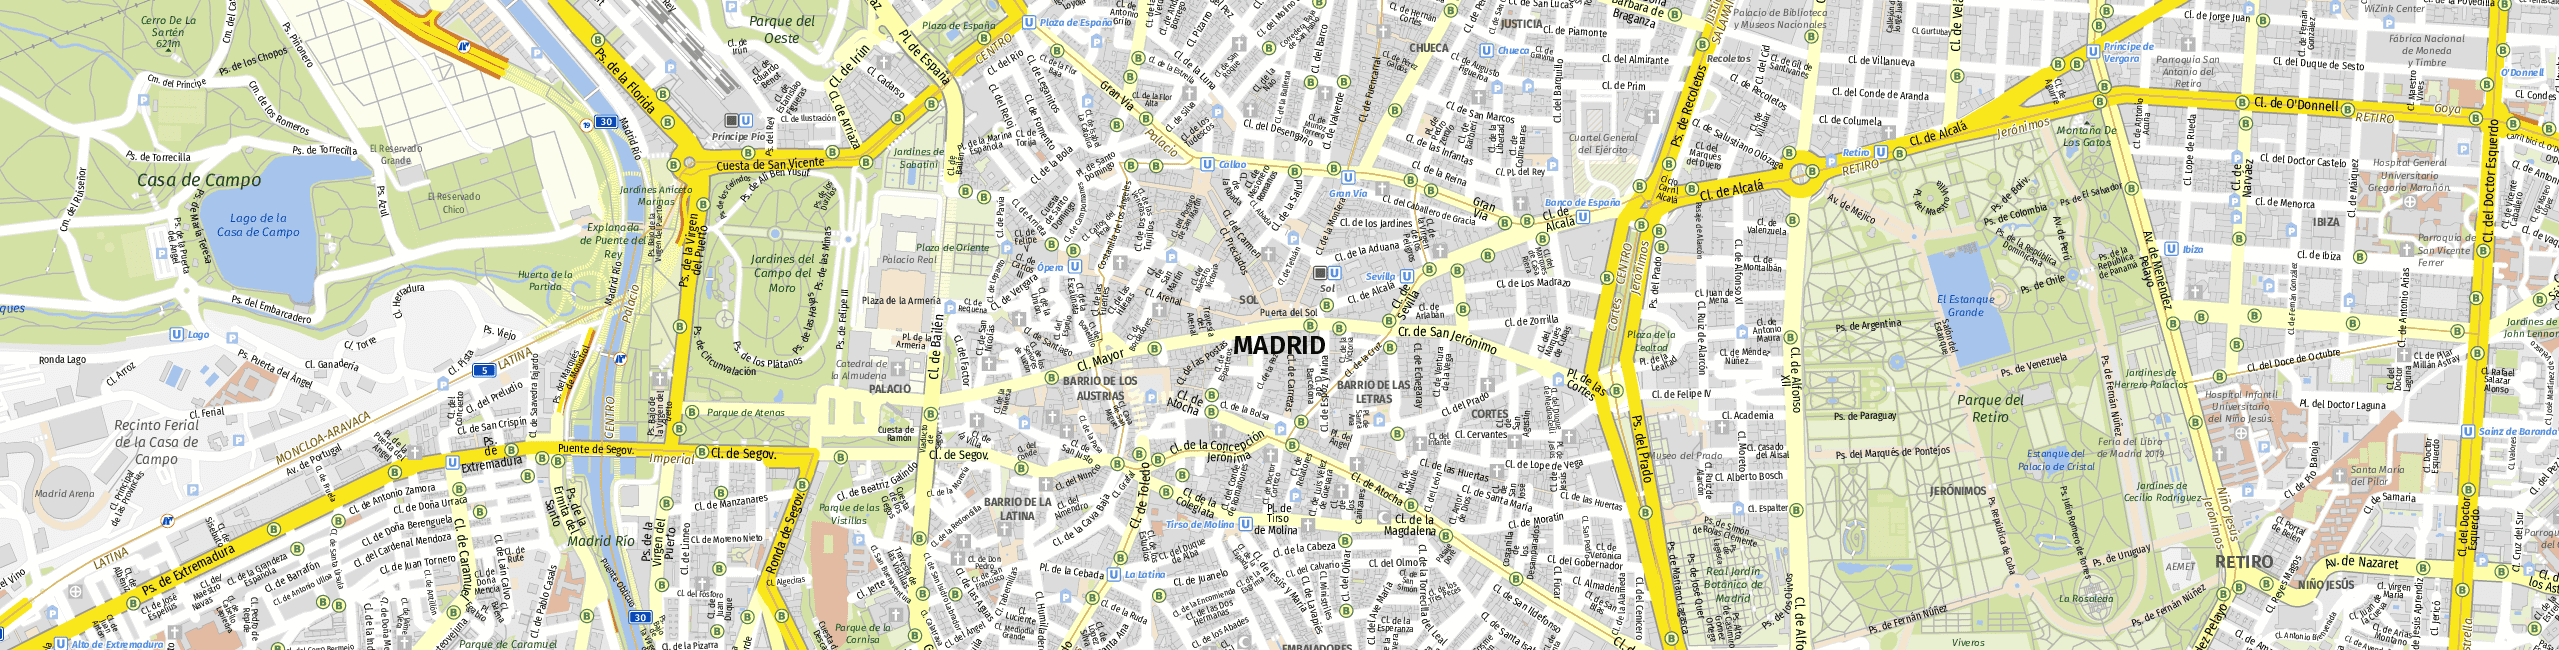 Stadtplan Madrid zum Downloaden.